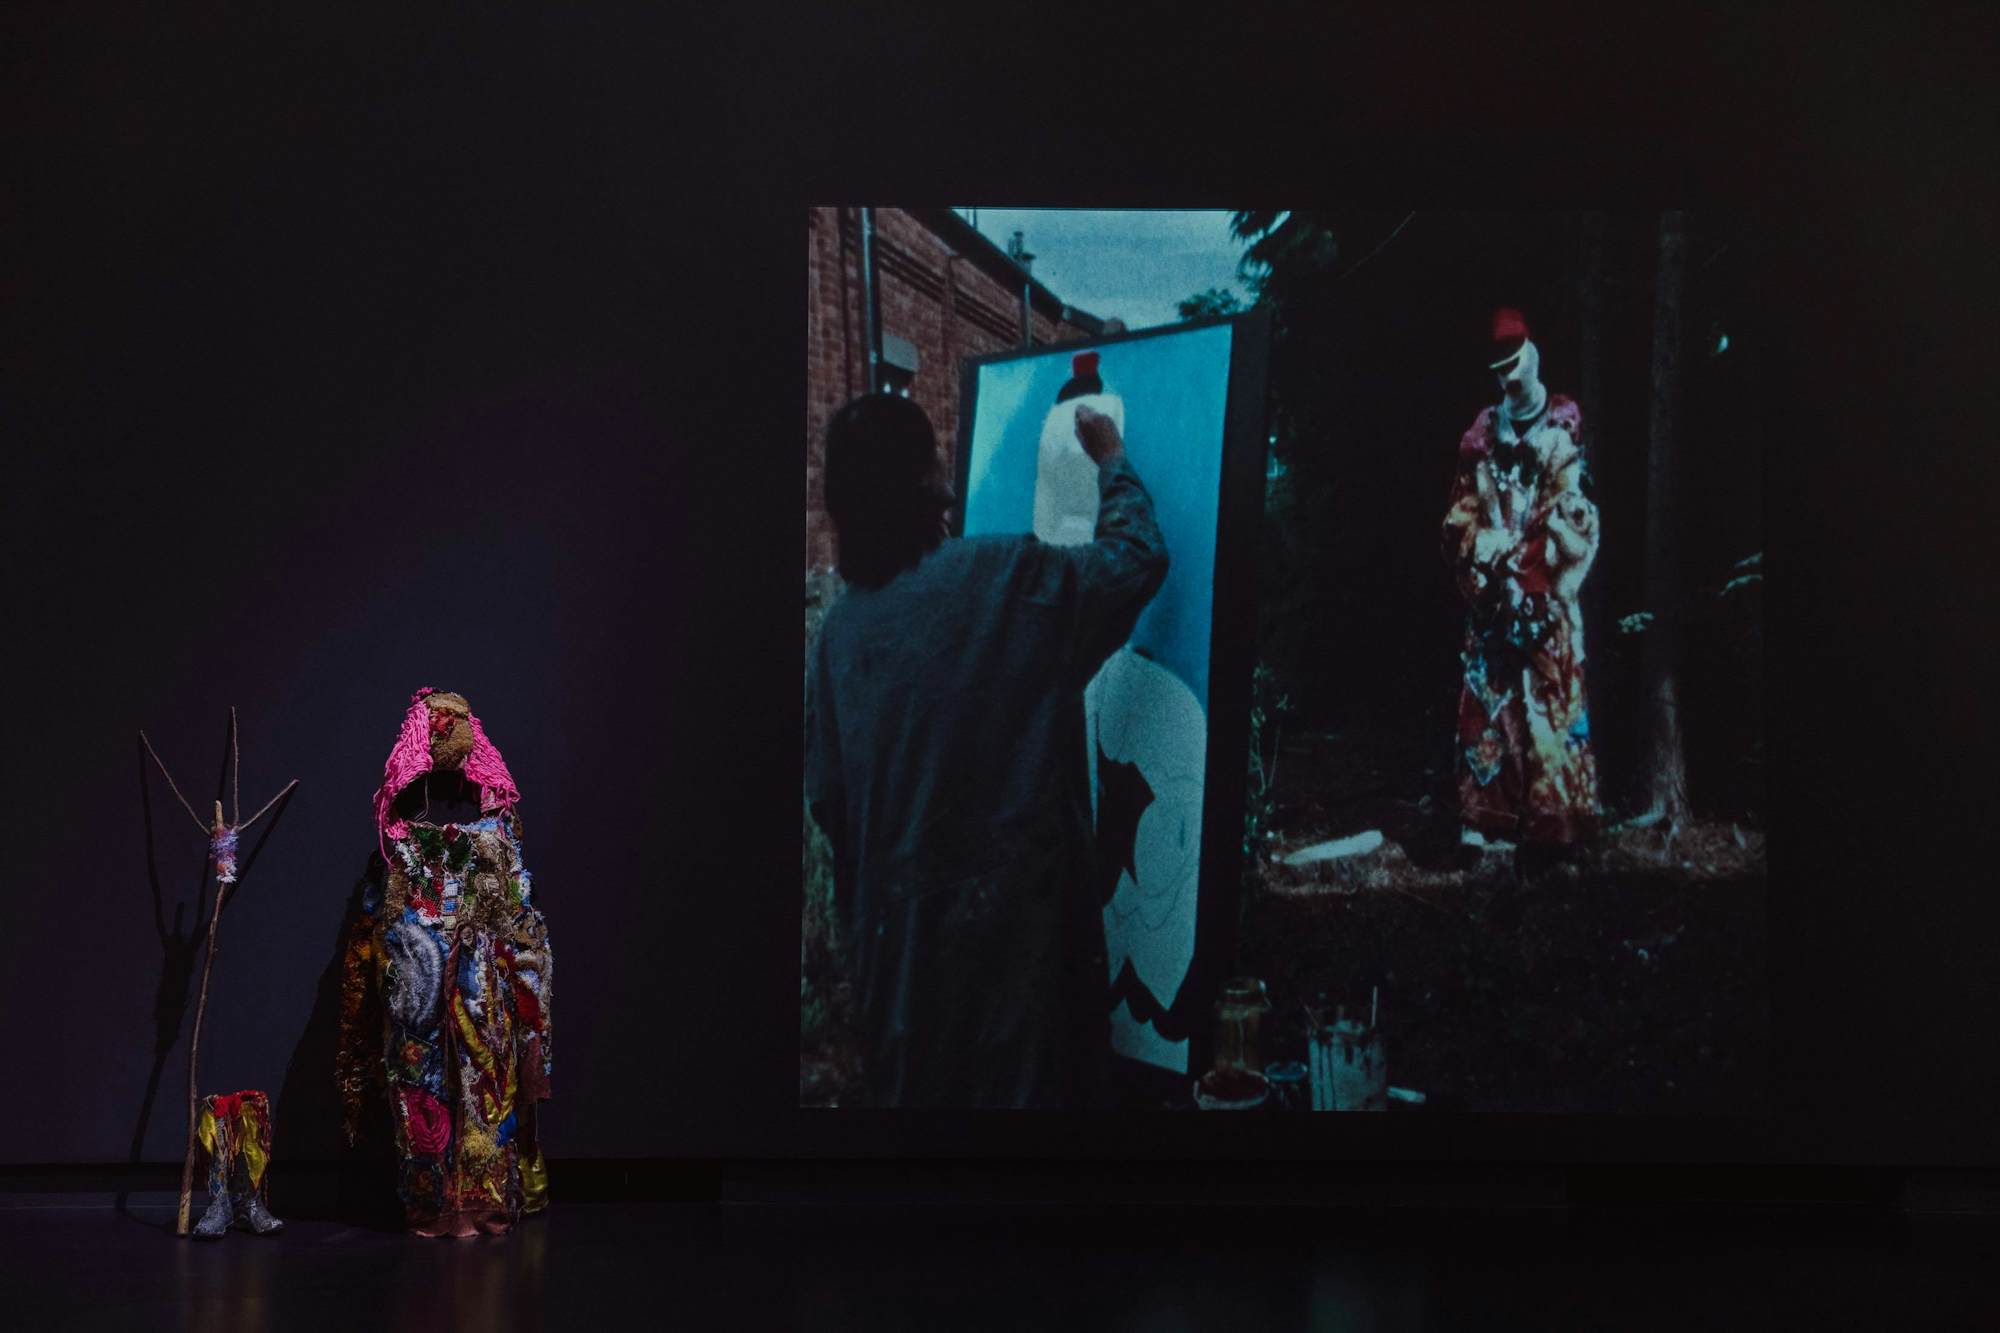 Nicolas CLEMENT - Barbara MASSART, "Barbara dans les bois", 2013-2015. Exposition La Colère de Ludd, BPS22, 2020. Photo : Leslie Artamonow